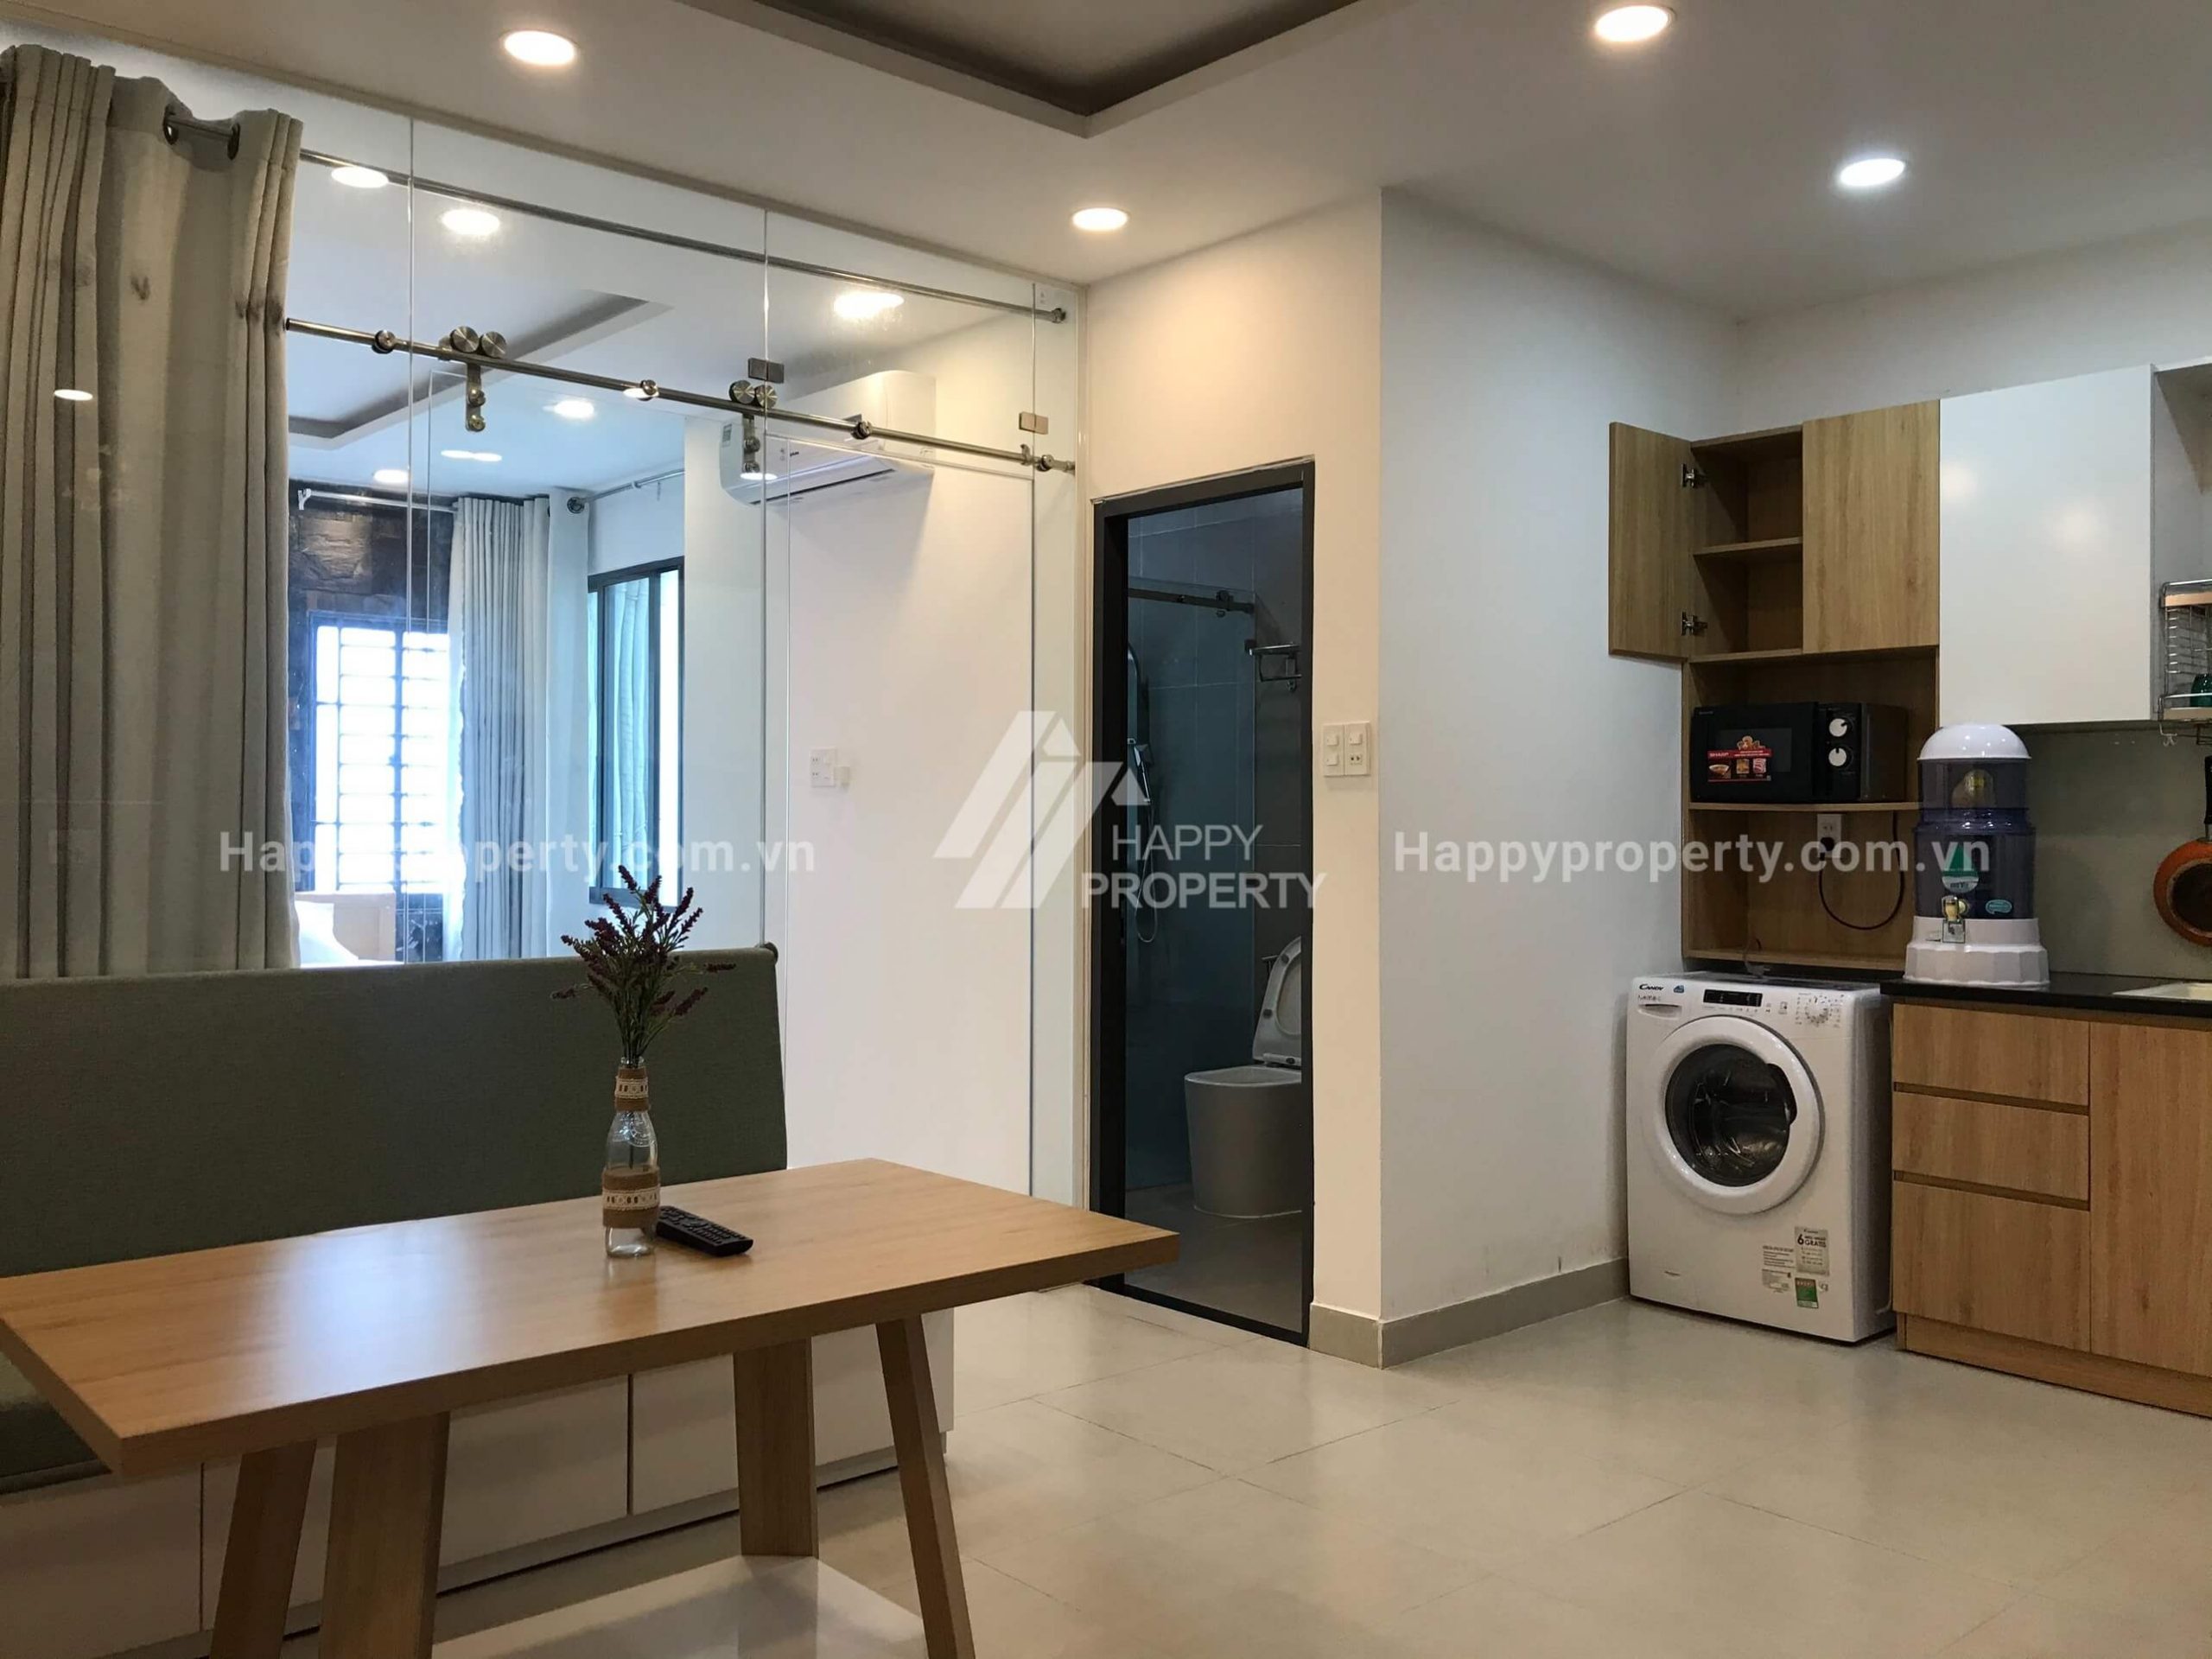 Beautiful Studio Apartment In Ngu Hanh Son Da Nang For Rent – NHS16